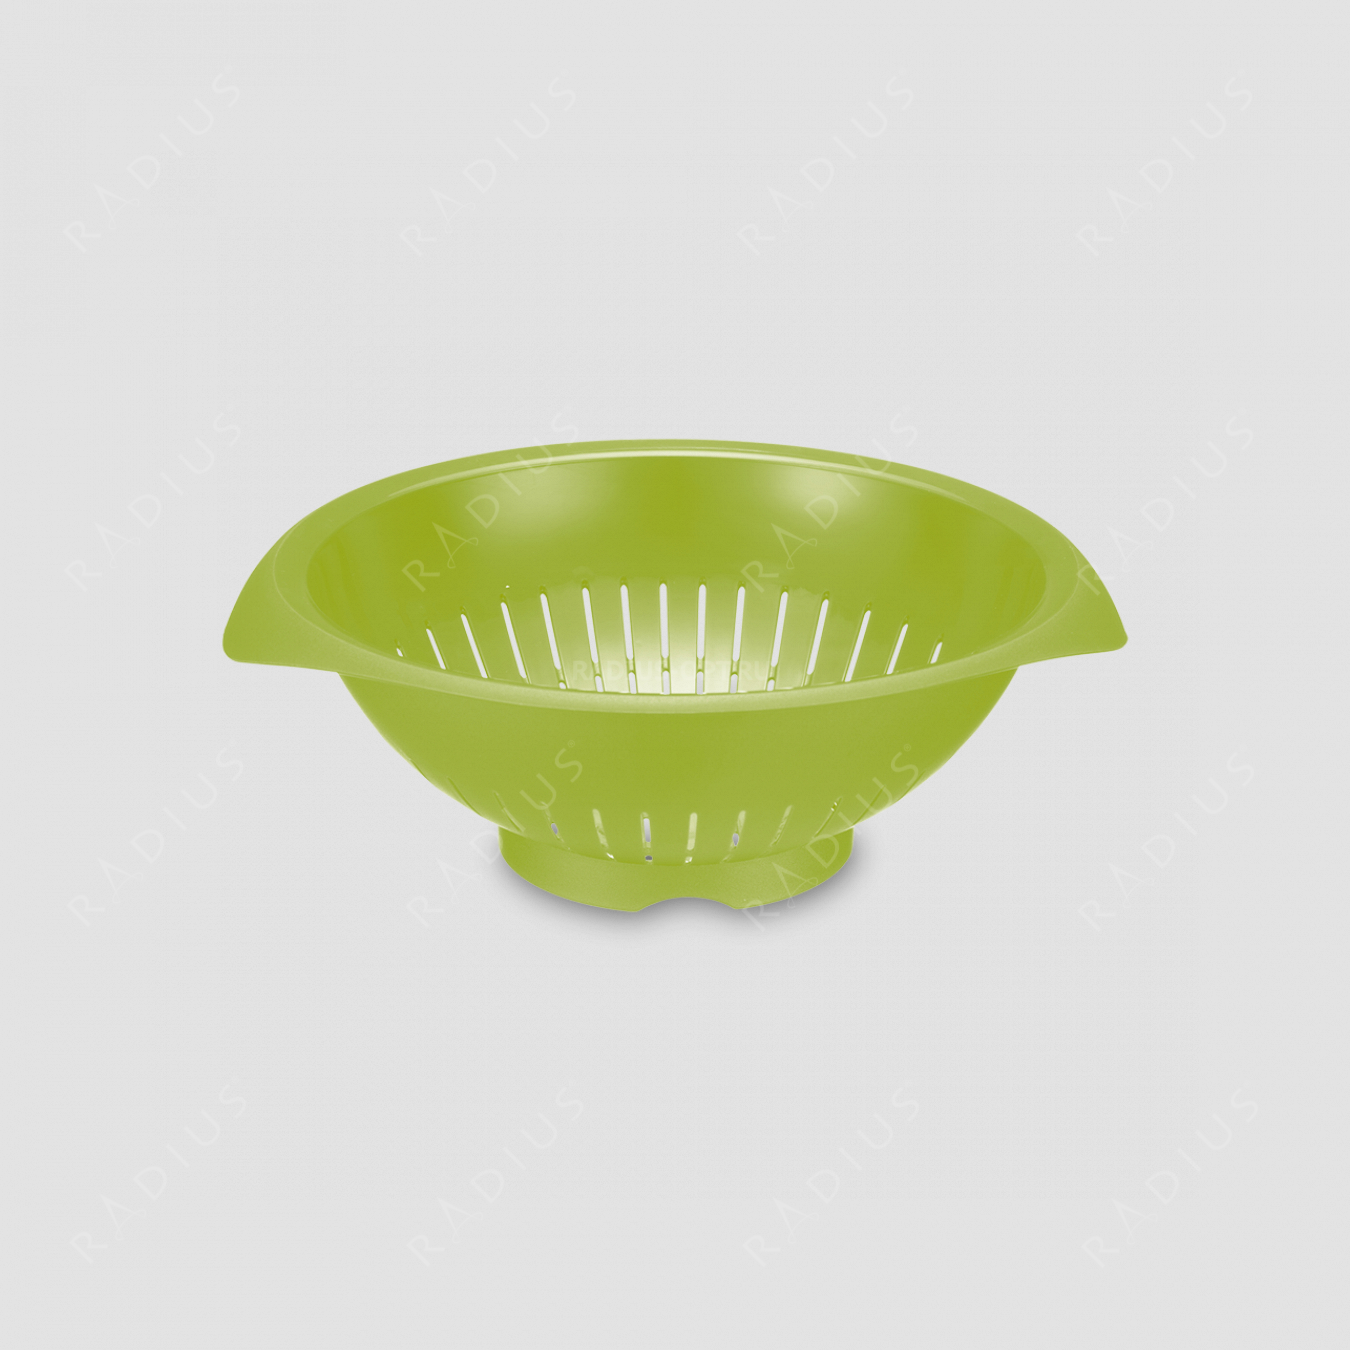 Дуршлаг диаметр 31 см, цвет - зеленый, серия Plastic tools, Westmark, Германия